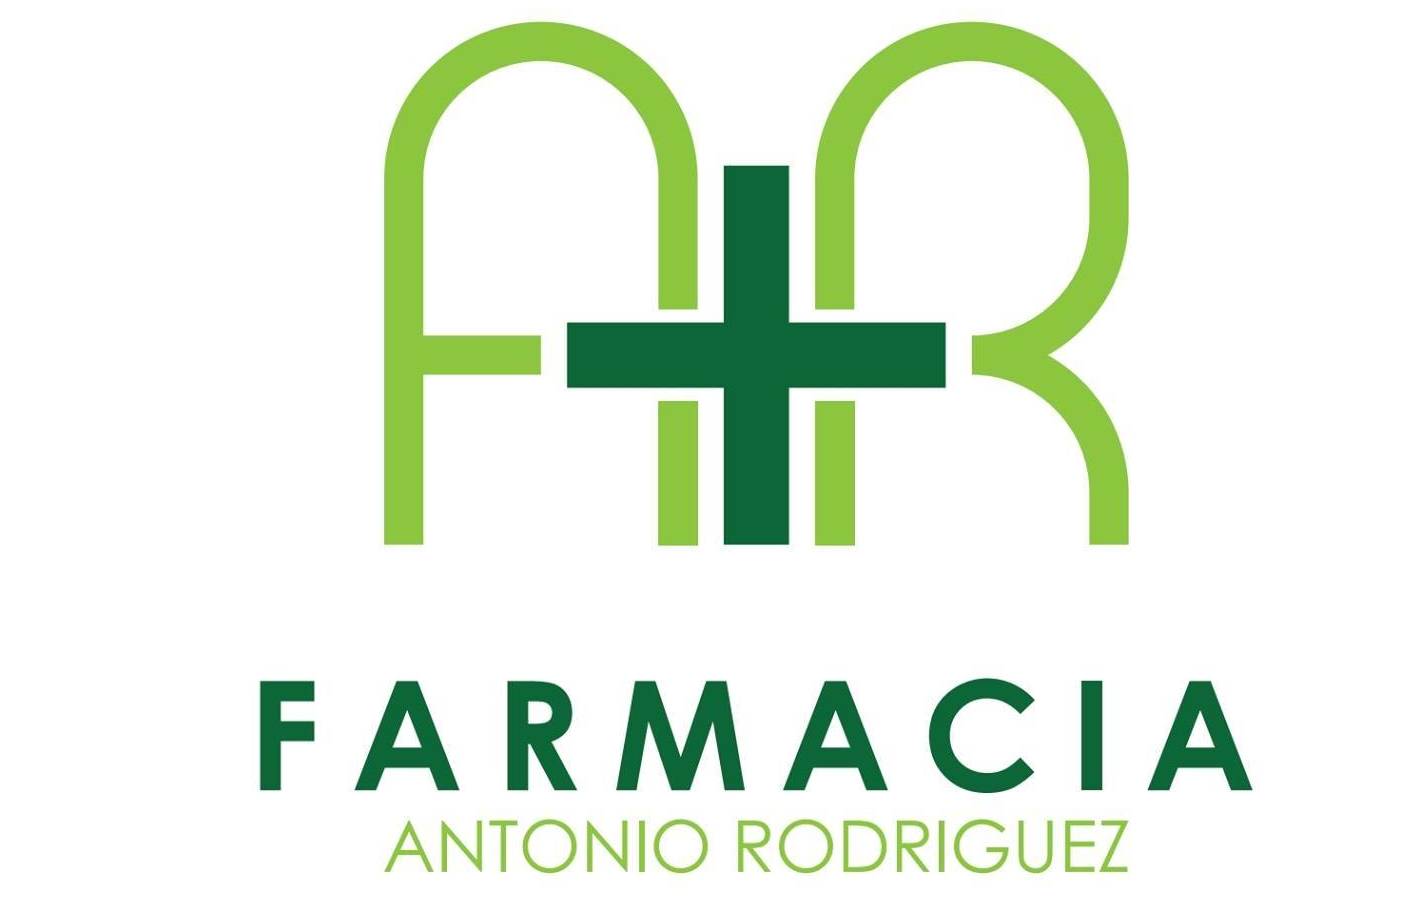 Farmacia Antonio Rodríguez